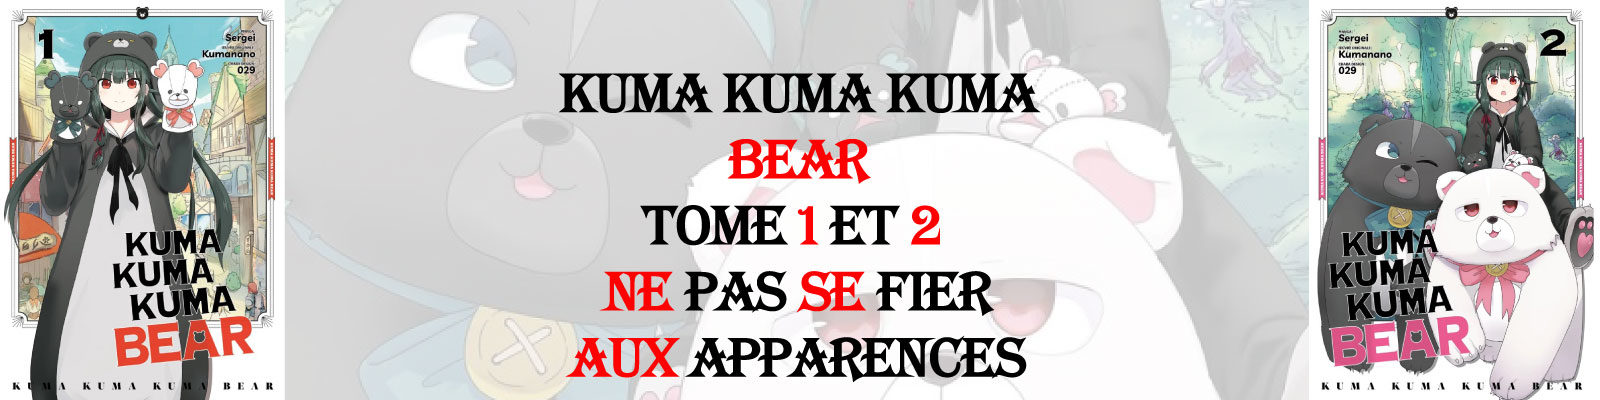 Kuma Kuma Kuma Bear-Vol.-1